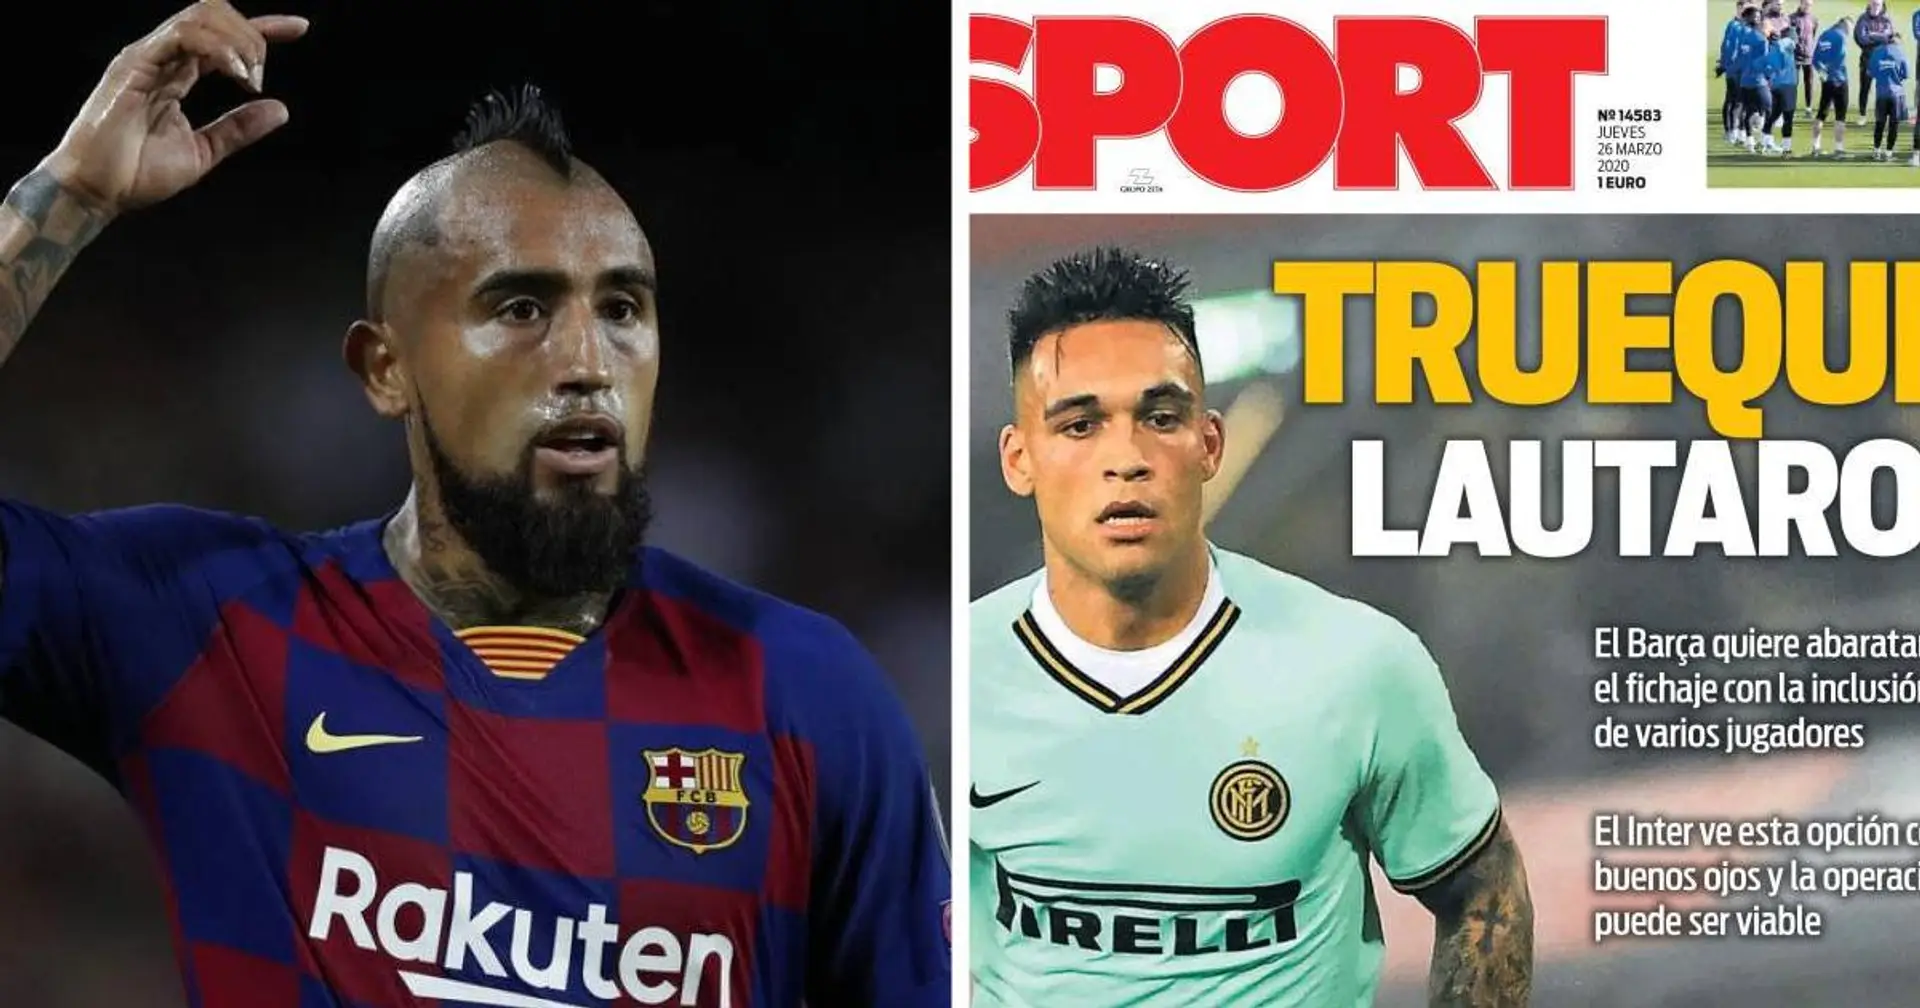 Barcelona könnte Spieler in den Lautaro-Deal einbeziehen: Vidal gilt als Hauptkandidat